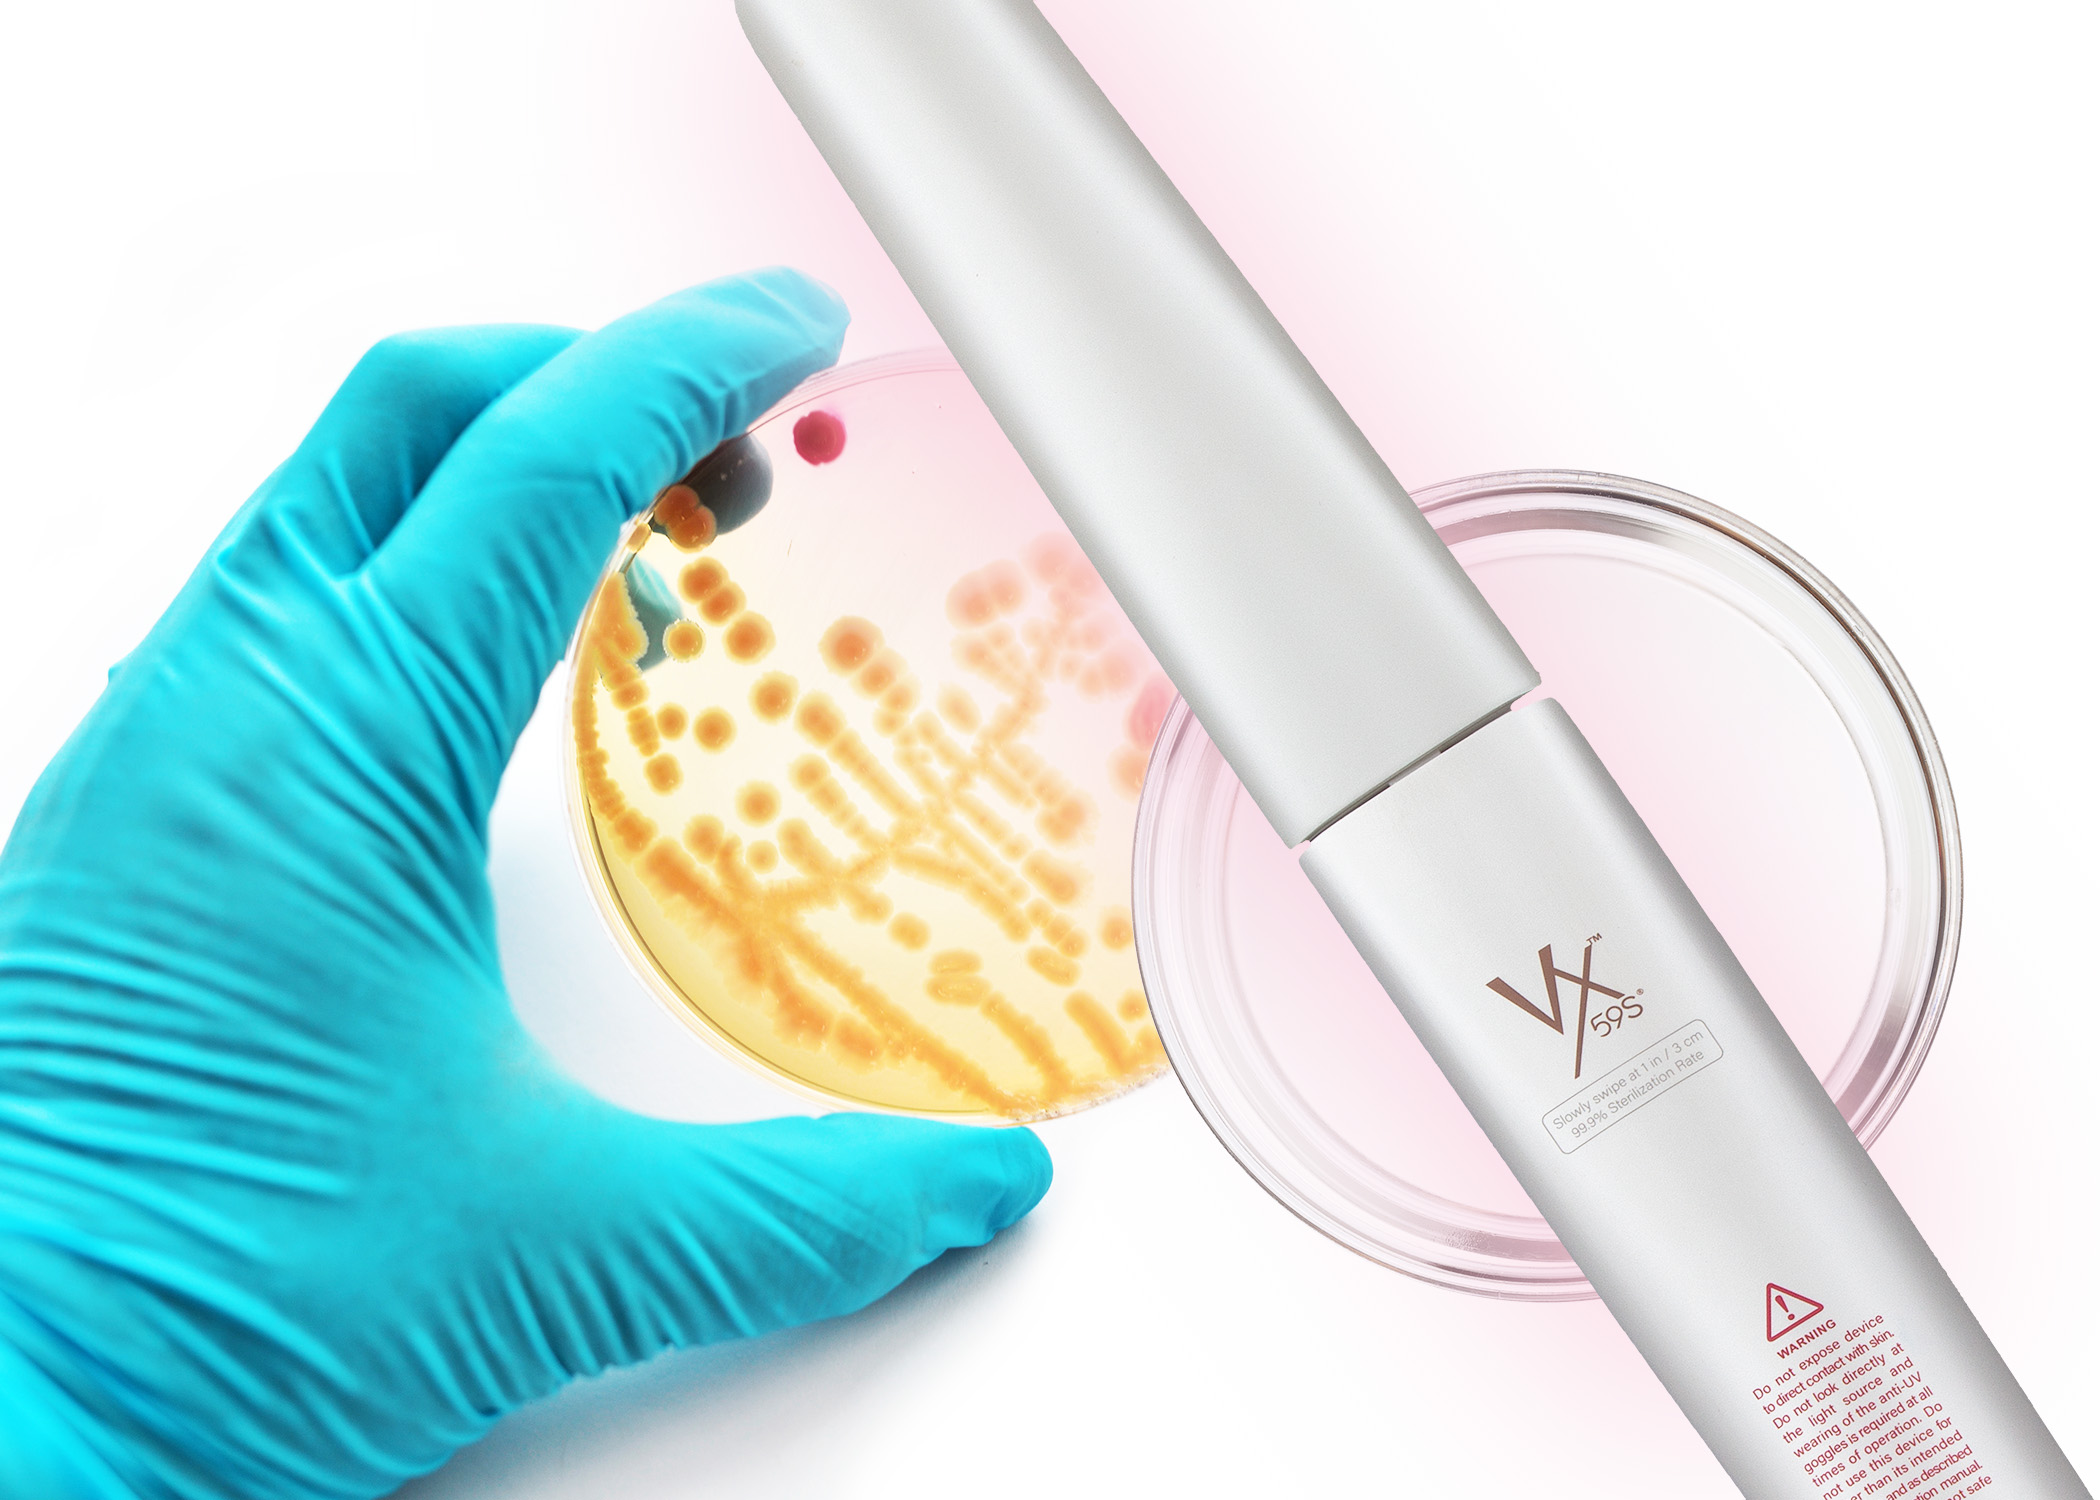 Velocilinx Germinator UVC wand and culture in Petri dish